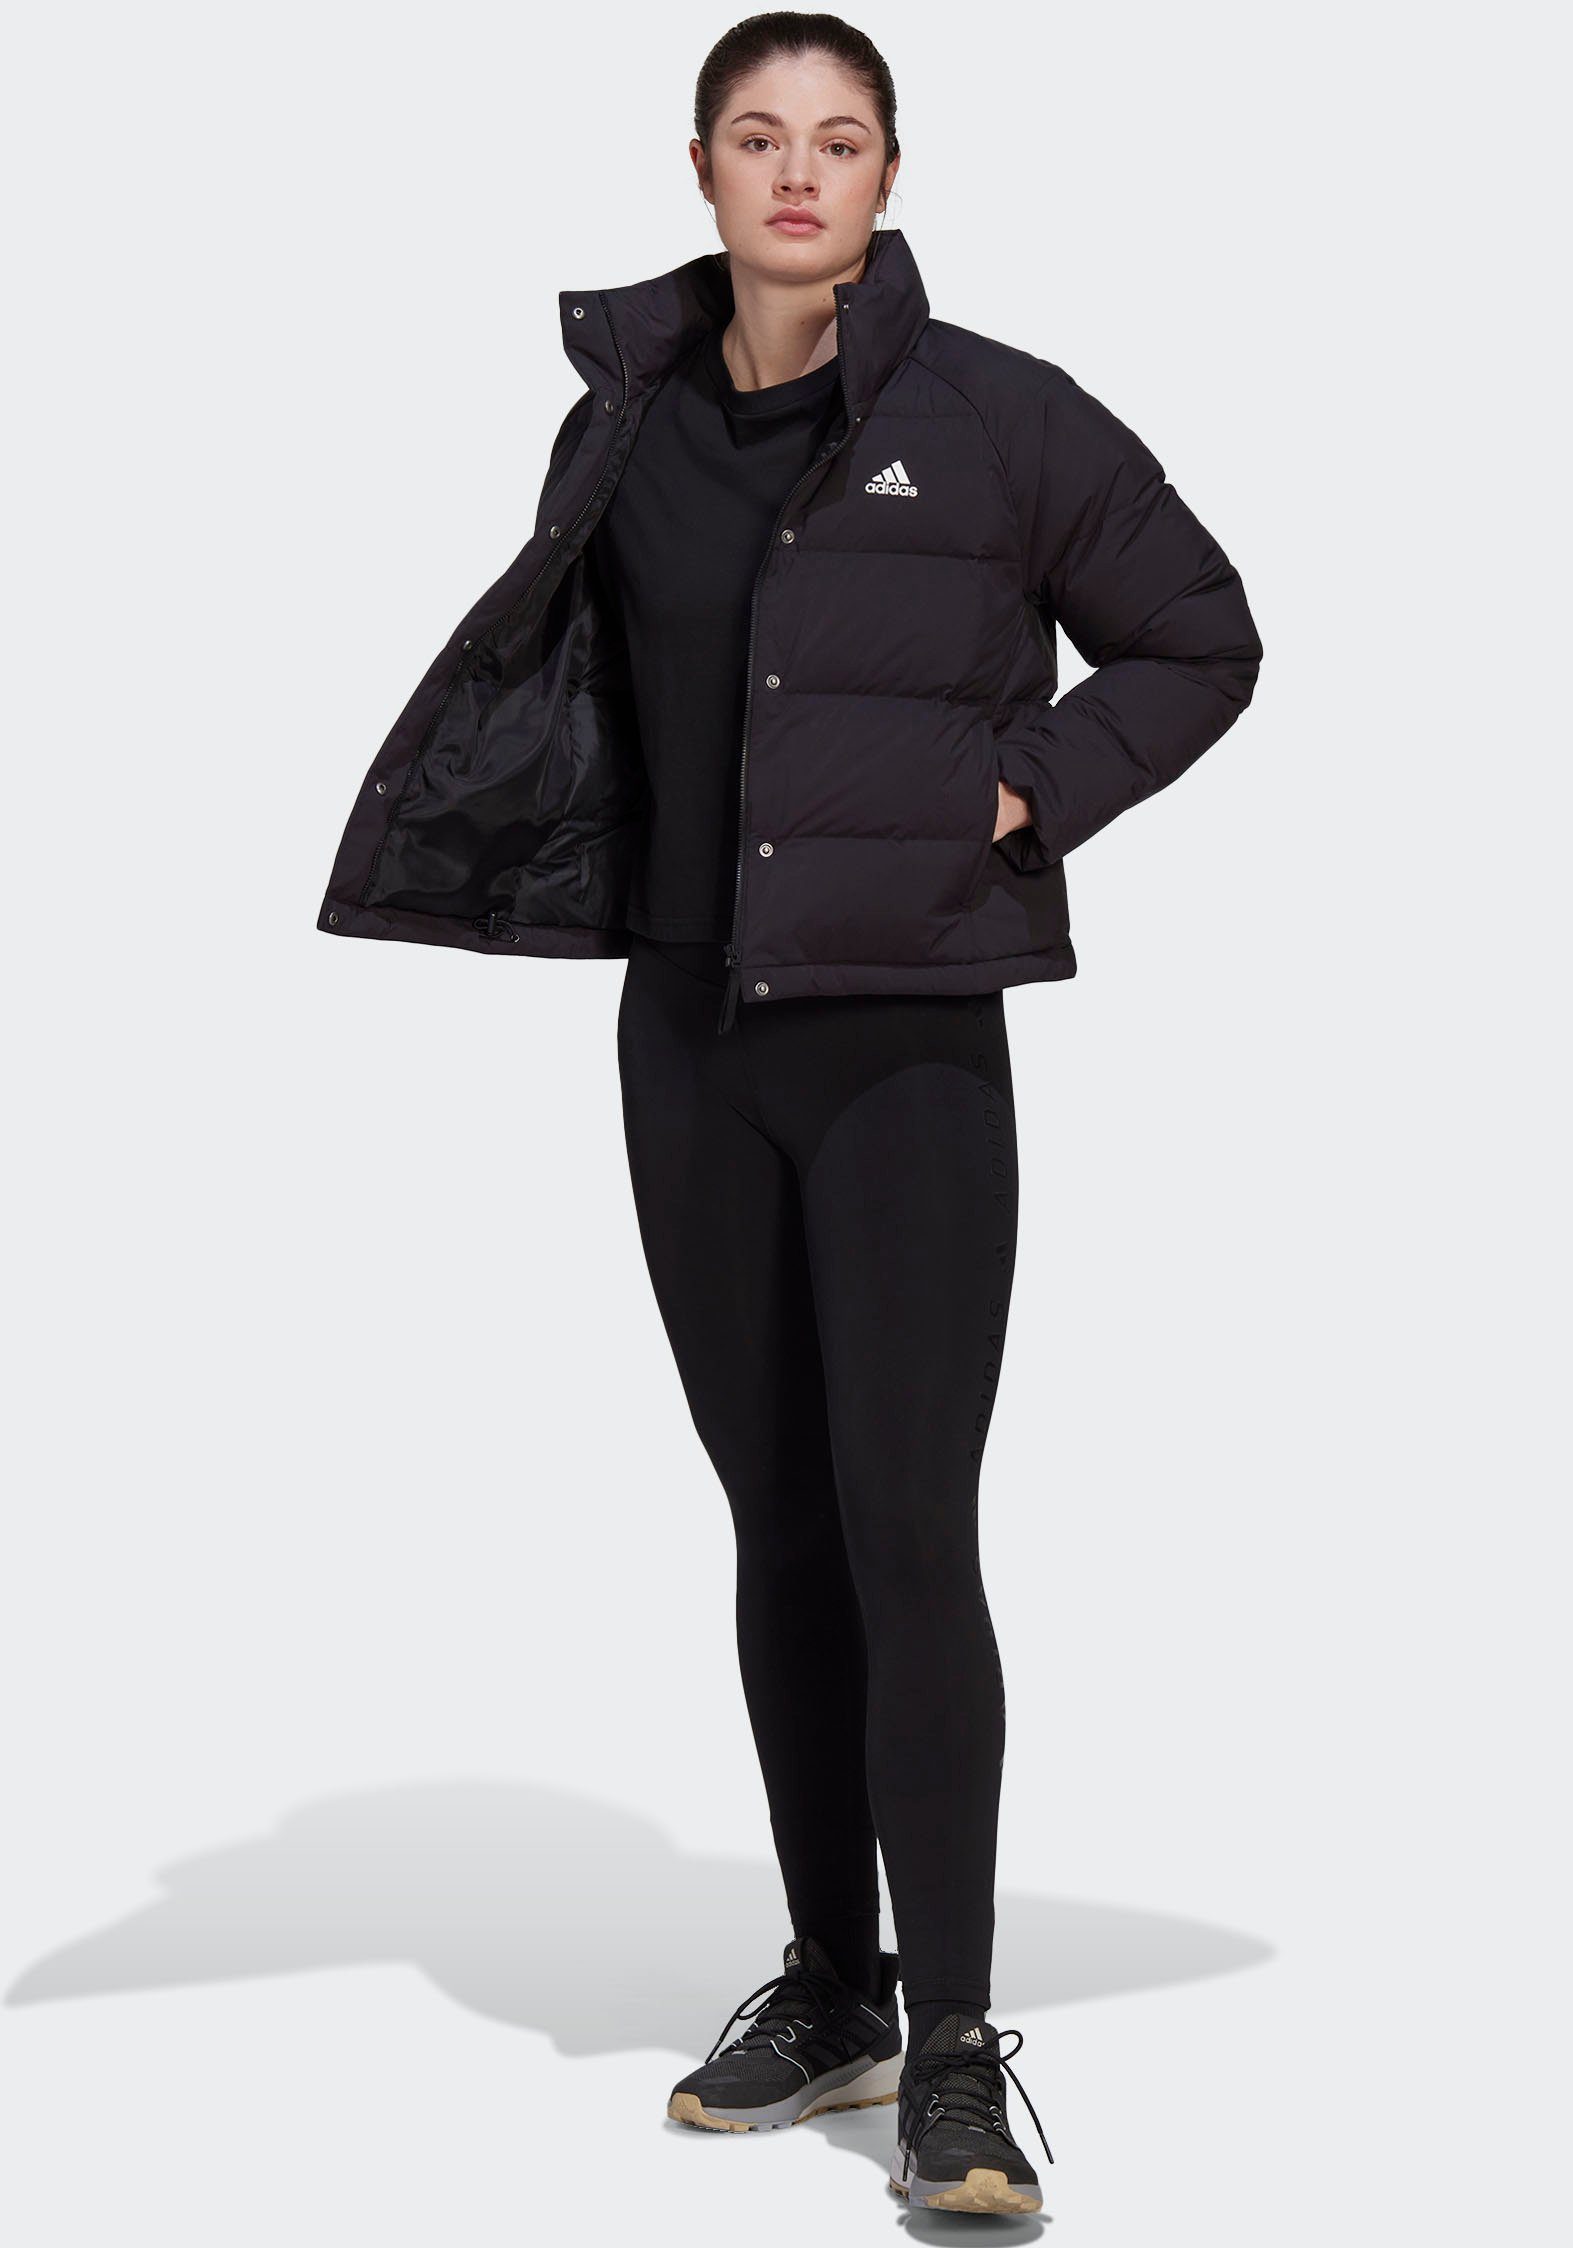 DAUNENJACKE HELIONIC RELAXED adidas Outdoorjacke schwarz Sportswear